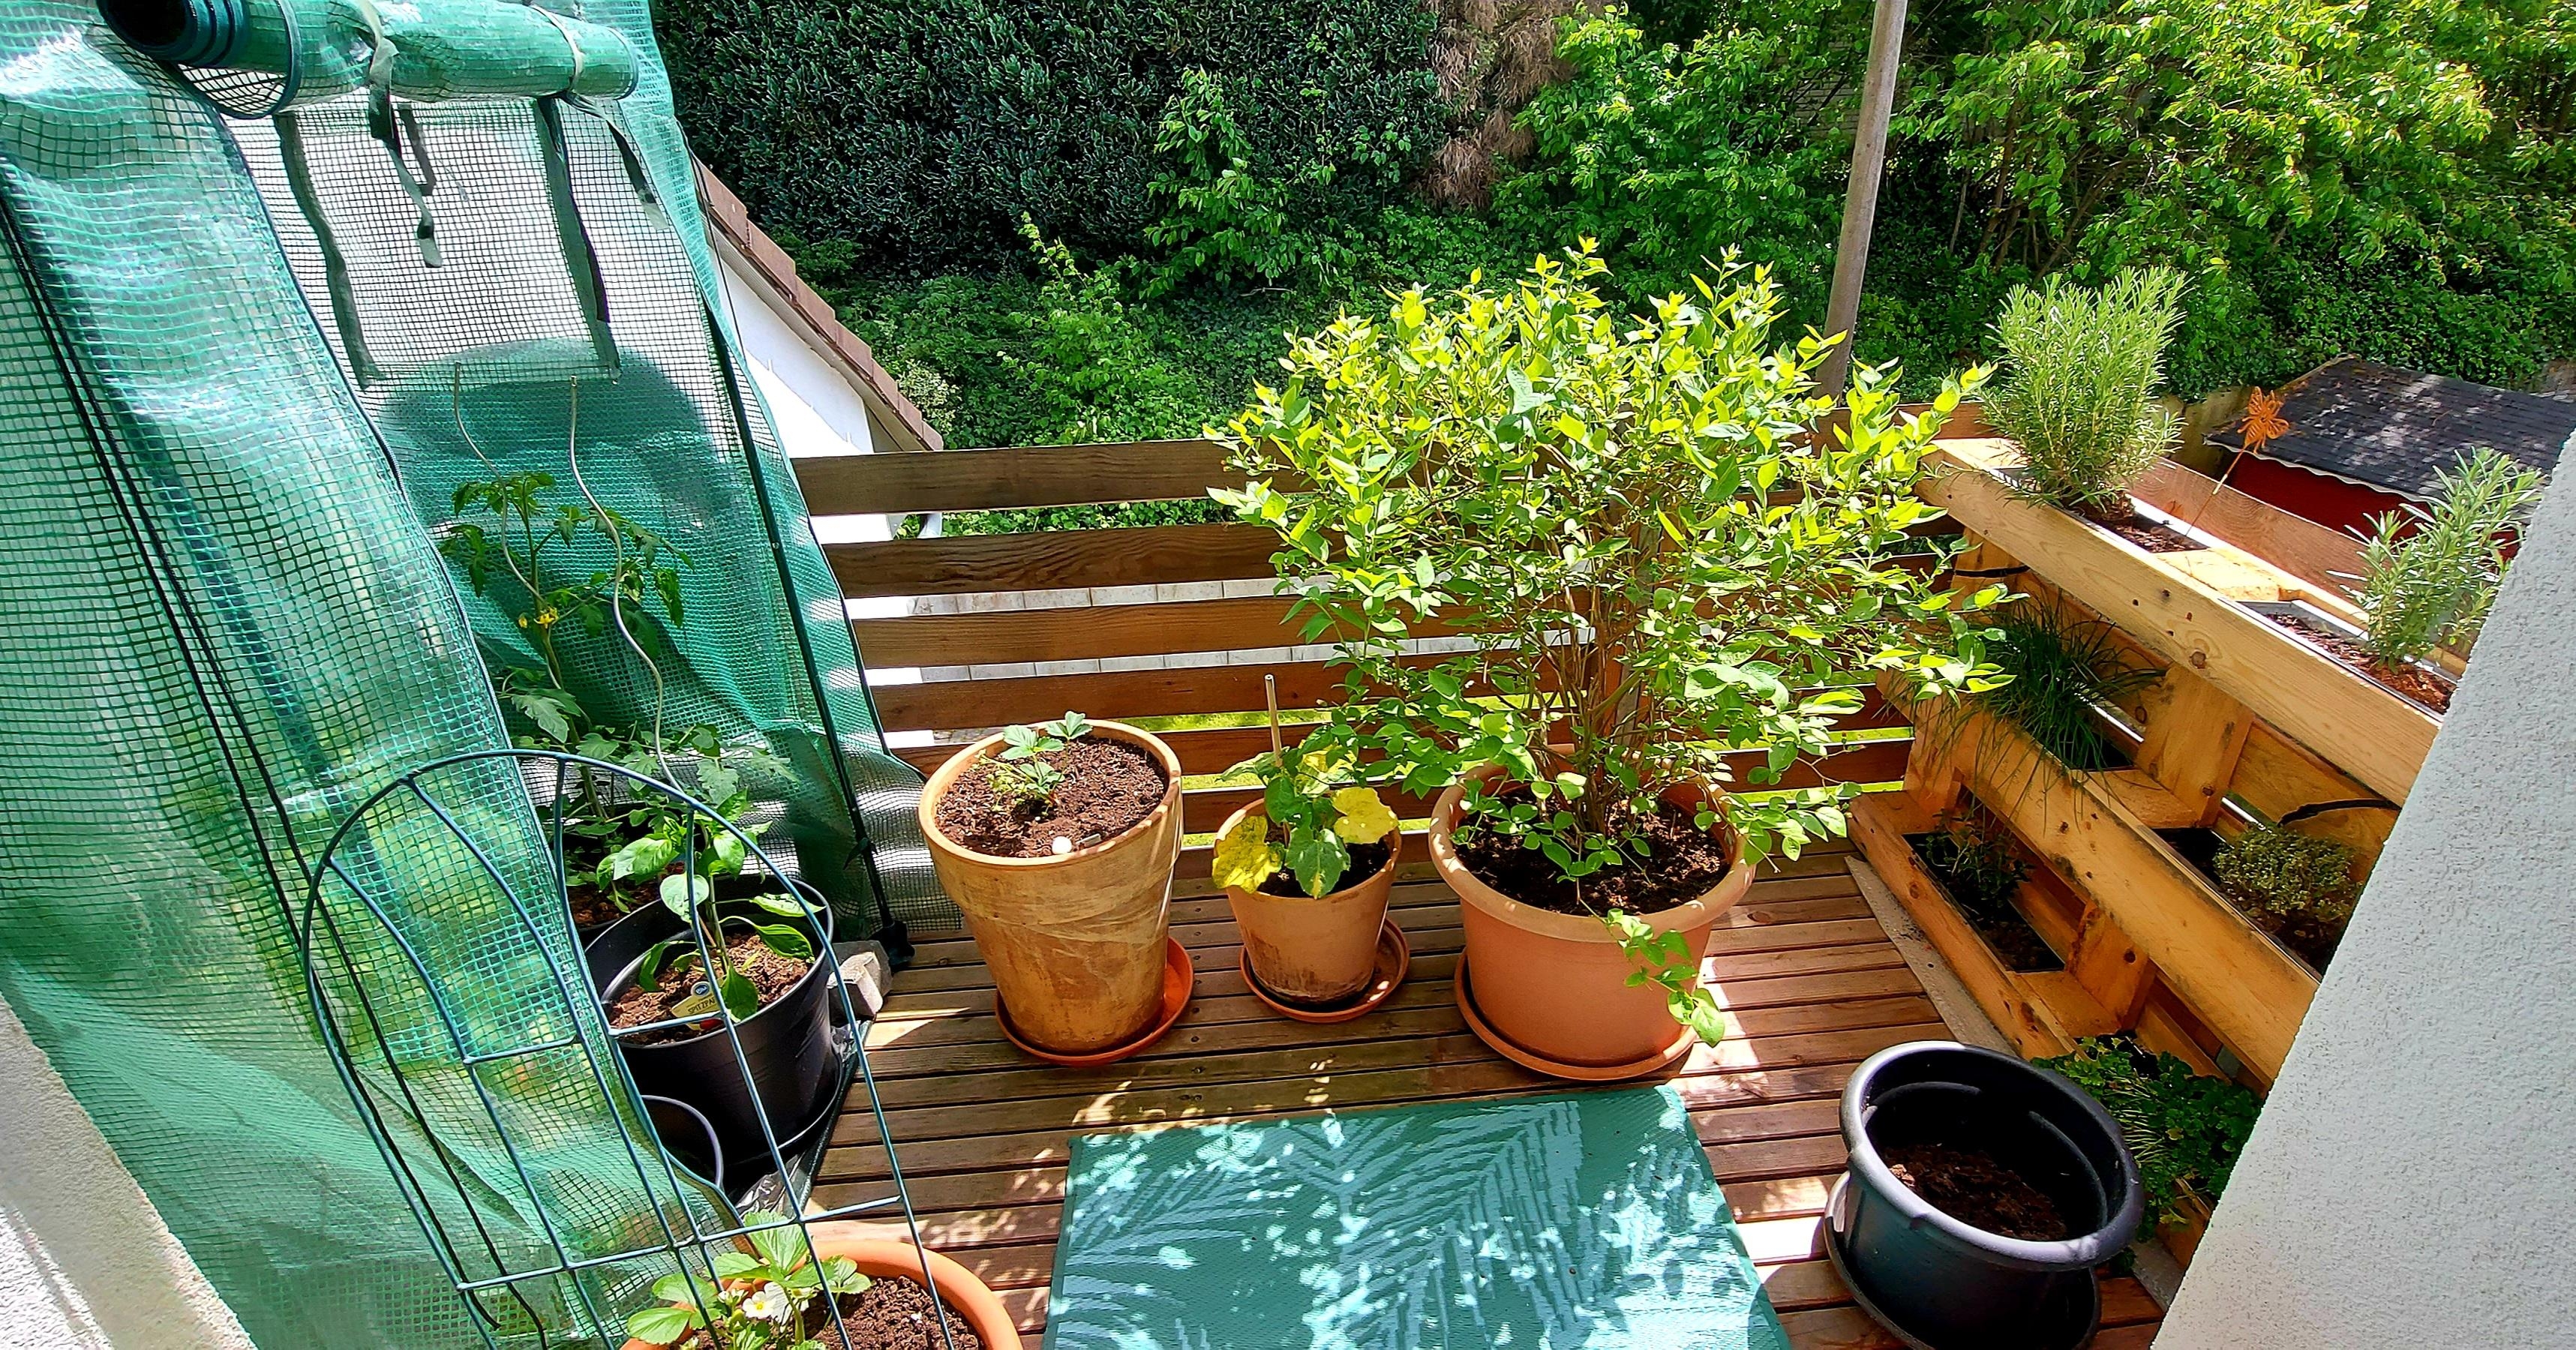 Urban Gardening auf einem unserer Balkone

#kleinerBalkon
#Gemuese #Palettenbeet #Kraeuter #Hochbeet #Tomatengewächshaus